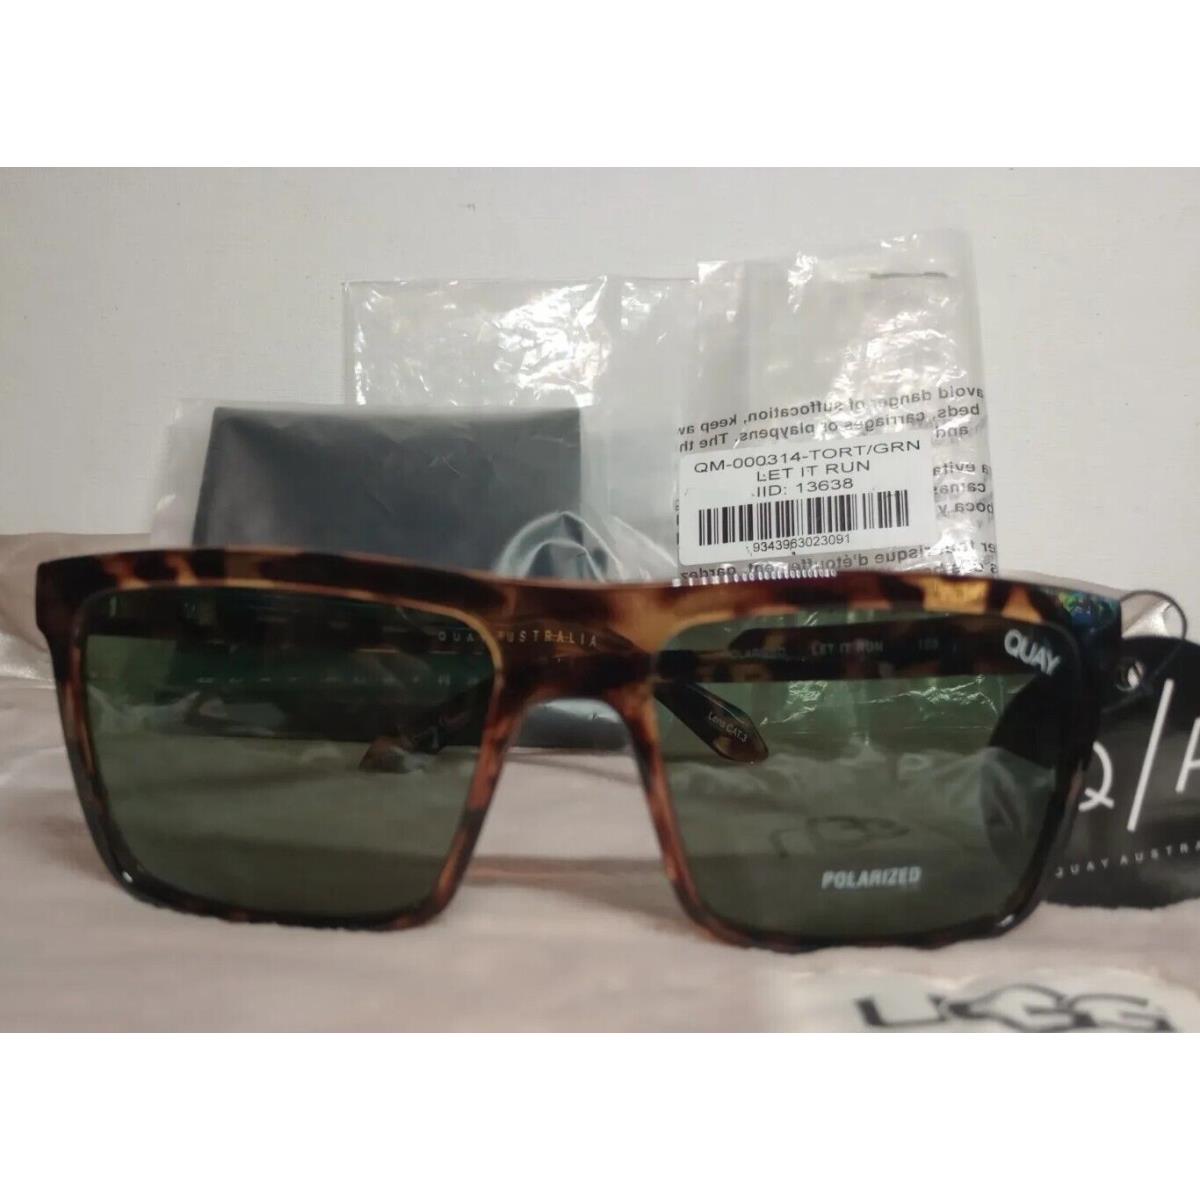 Quay Let It Run Polarized Sunglasses Tortoise/greenish Grayish Lens